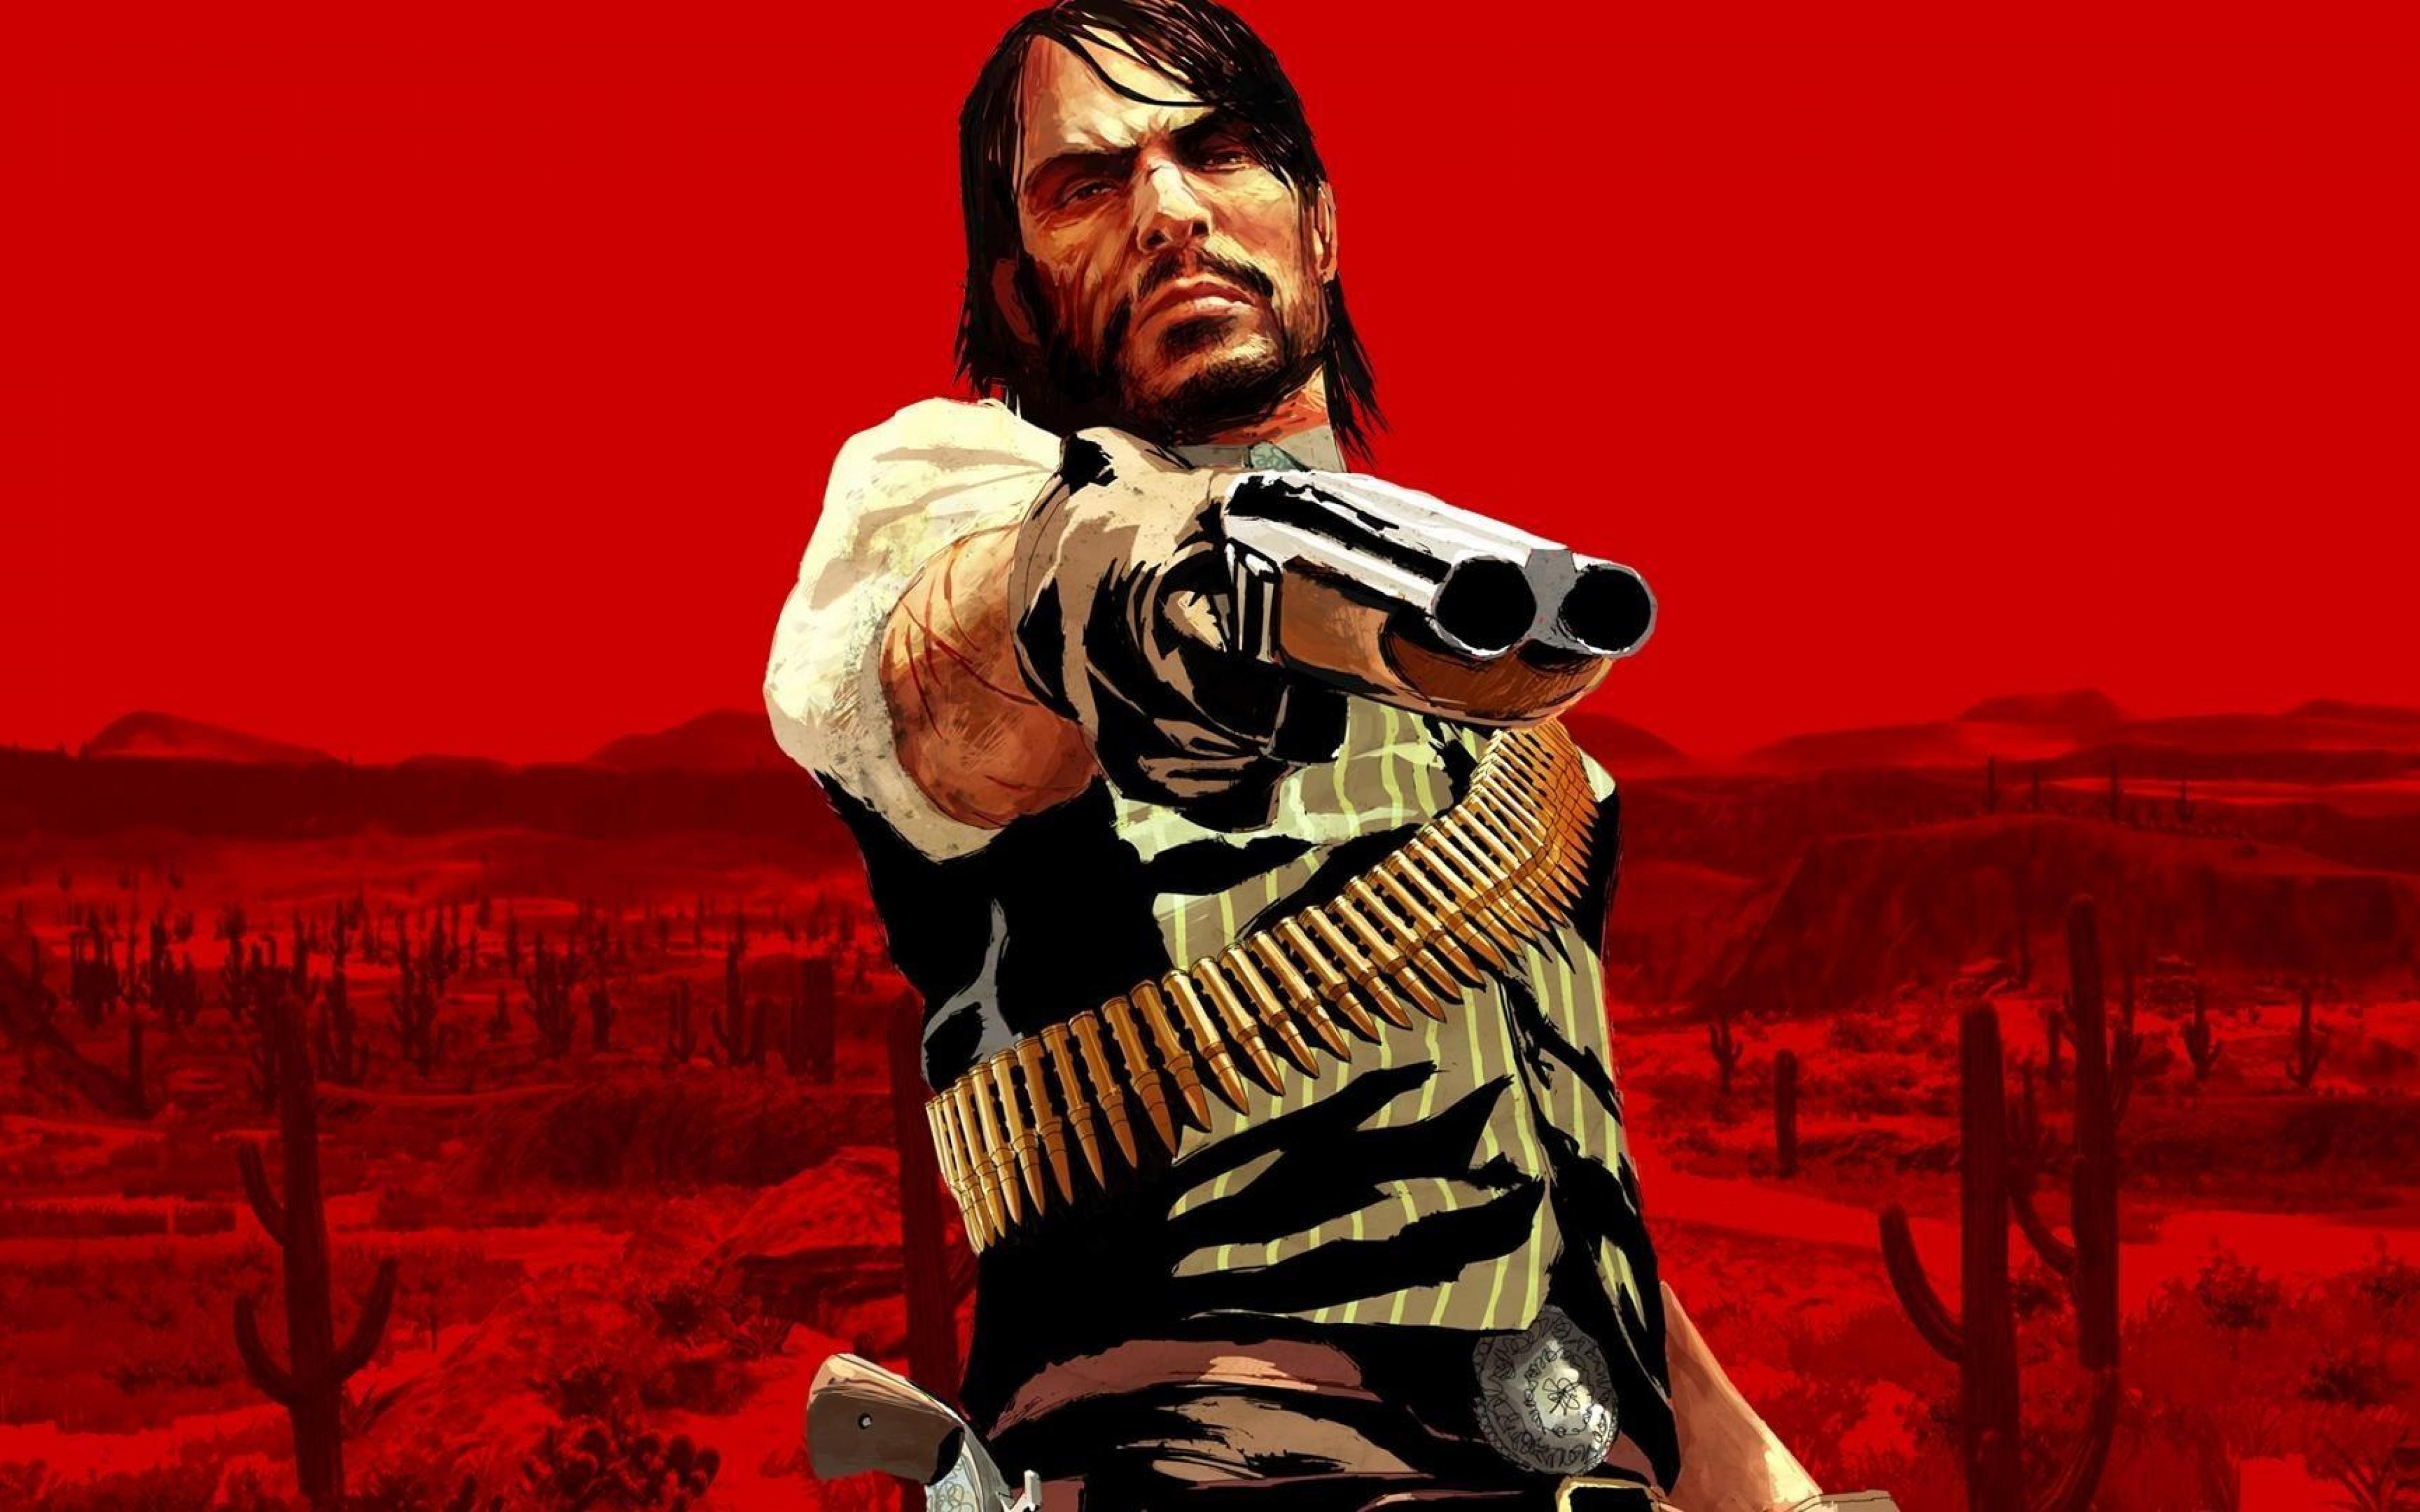 Red Dead Redemption для PS4